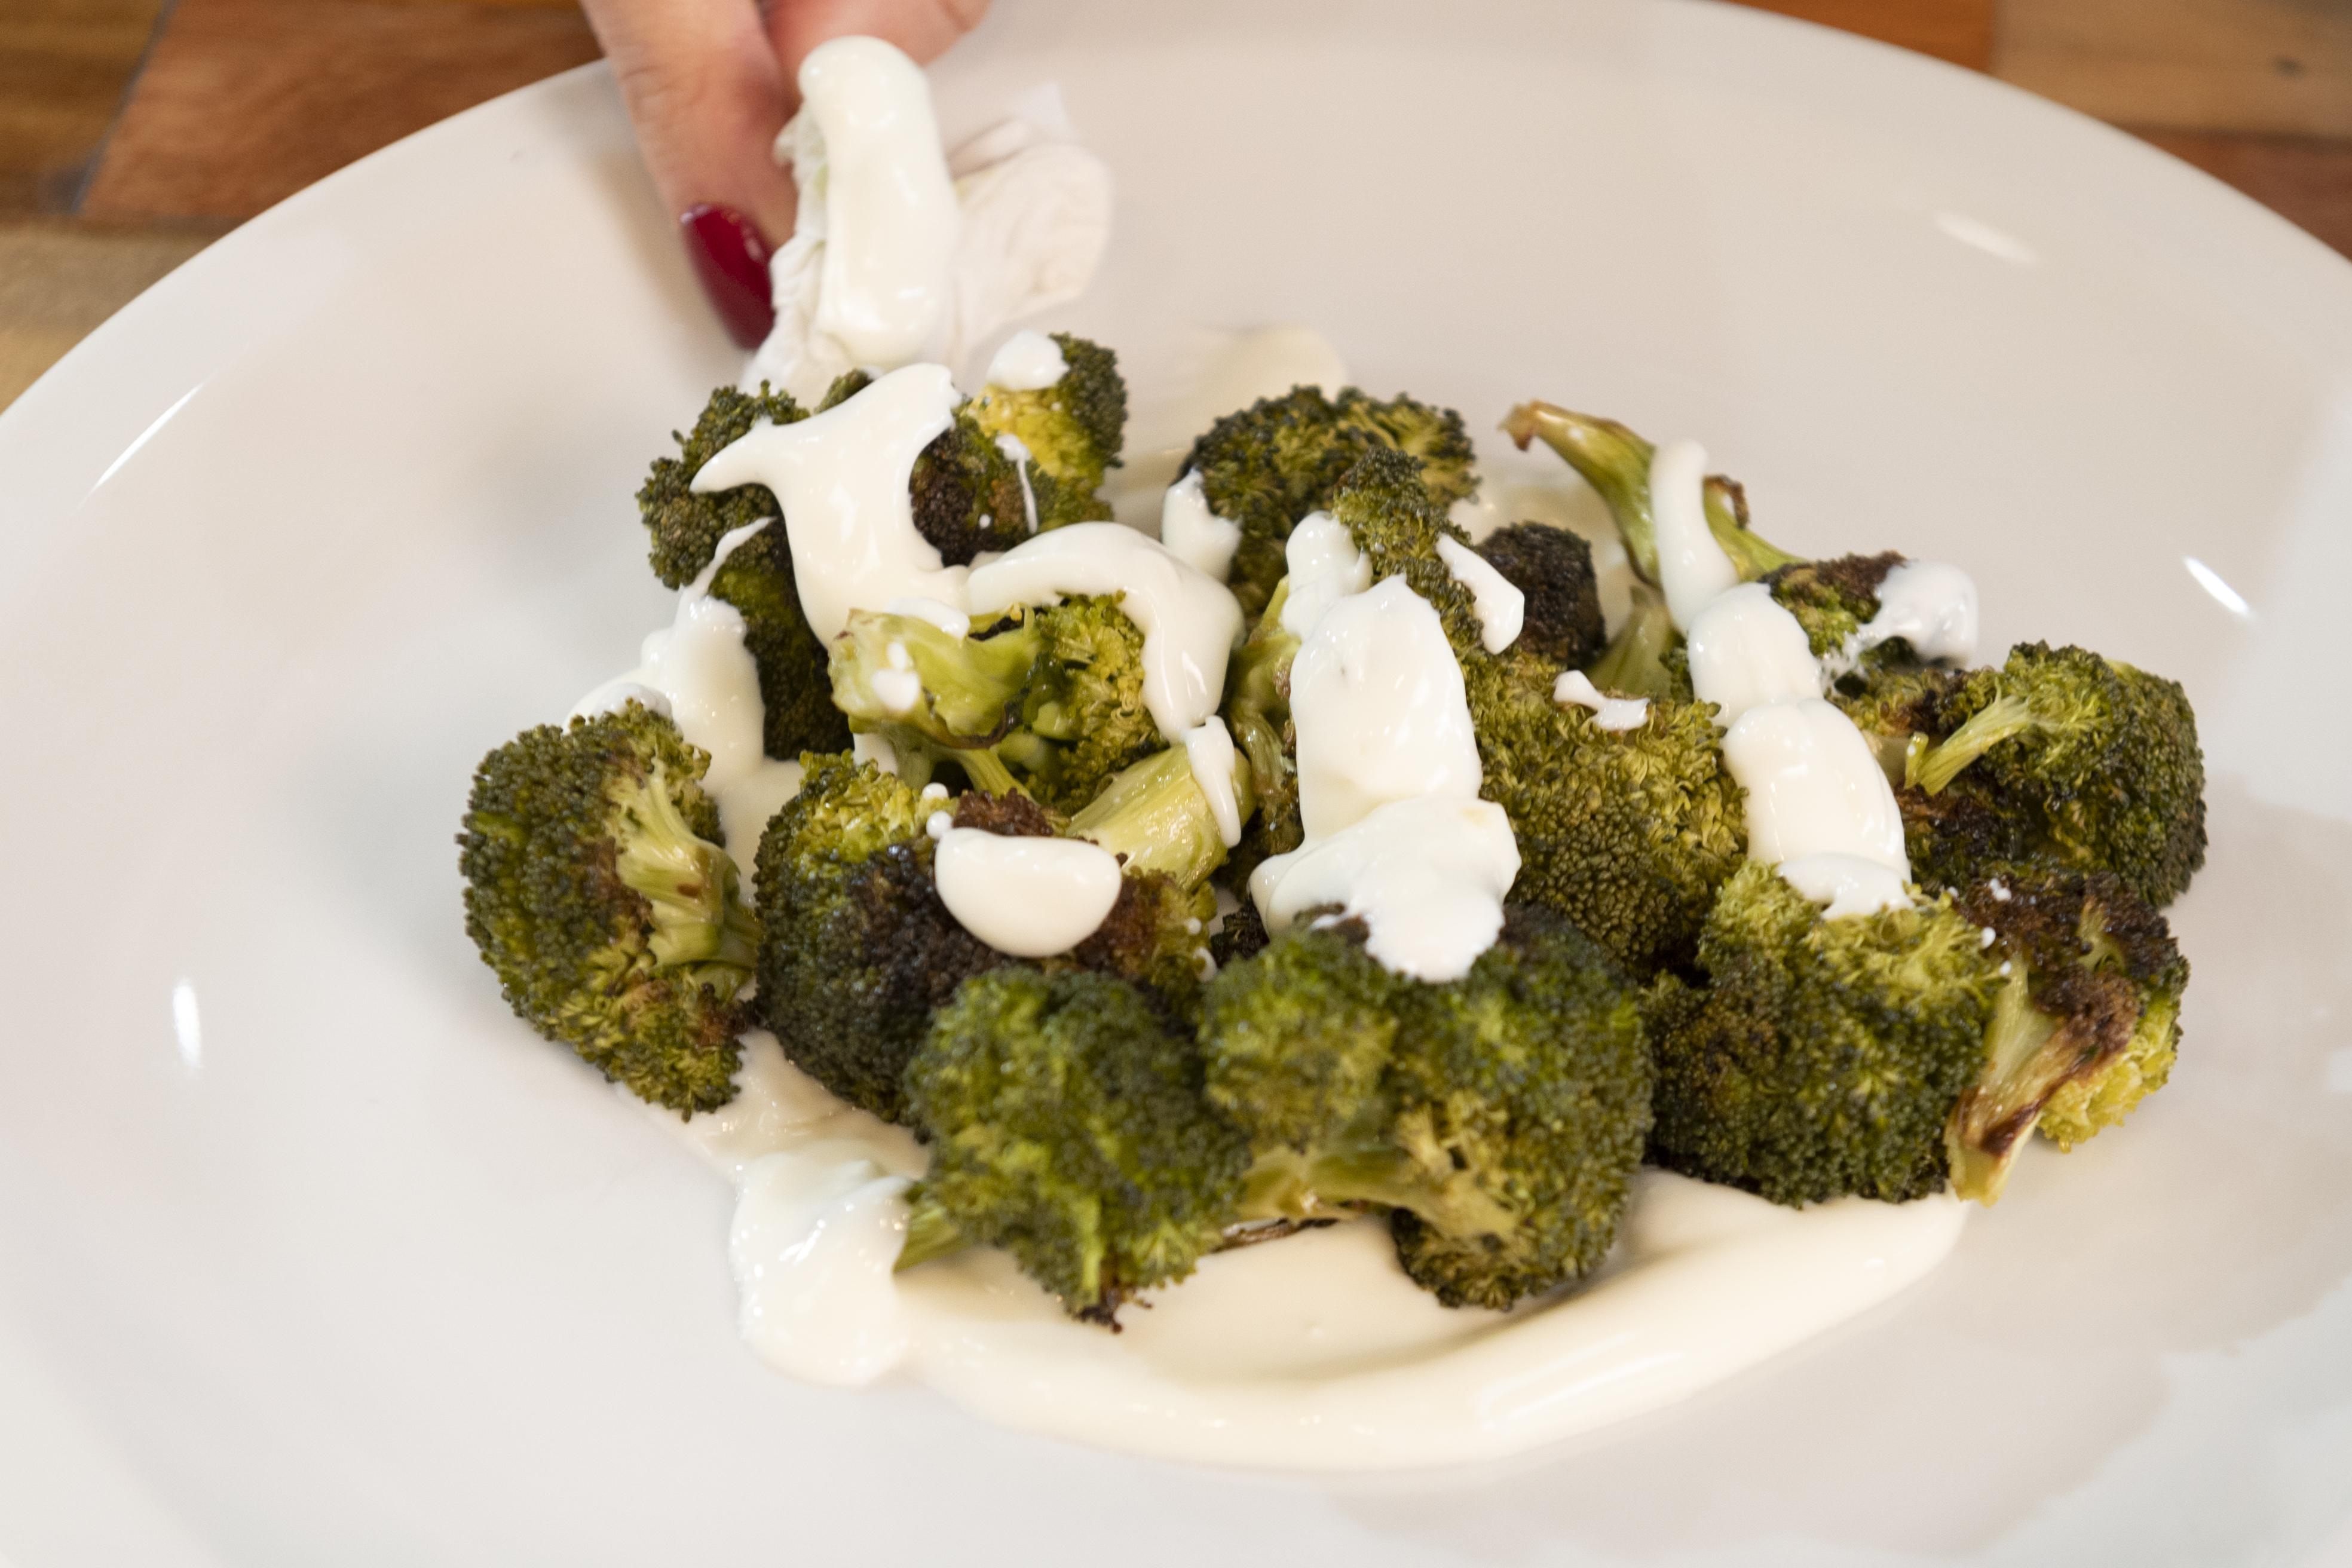 Cómo preparar brócoli con salsa de yogur, una receta súper nutritiva y saludable